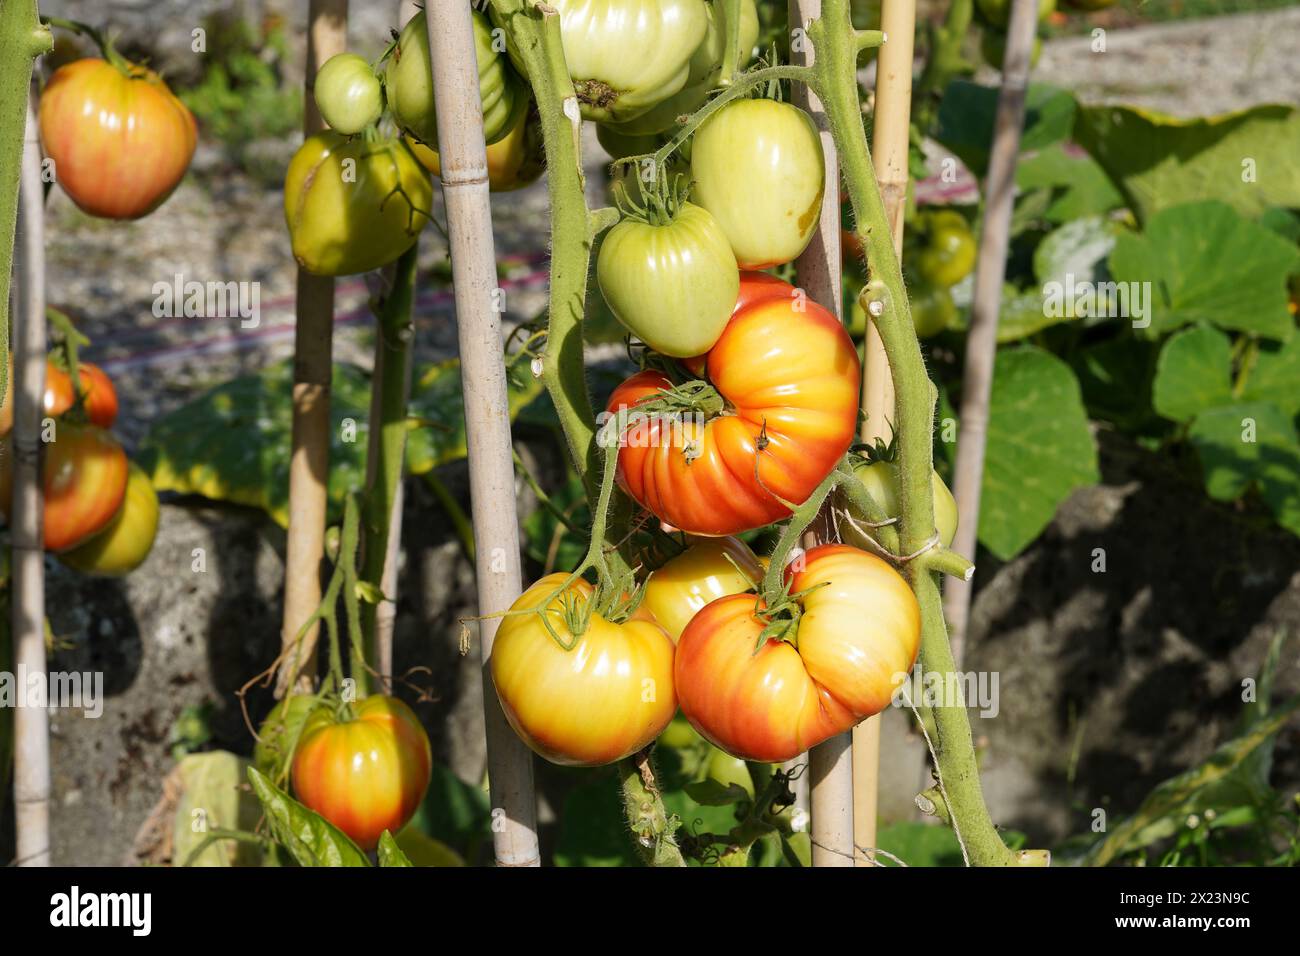 Charnu de tomate beefsteak dans divers états de maturité poussent sur une tige. Sur le fond, il y a plus de plants de tomates avec des fruits. Banque D'Images